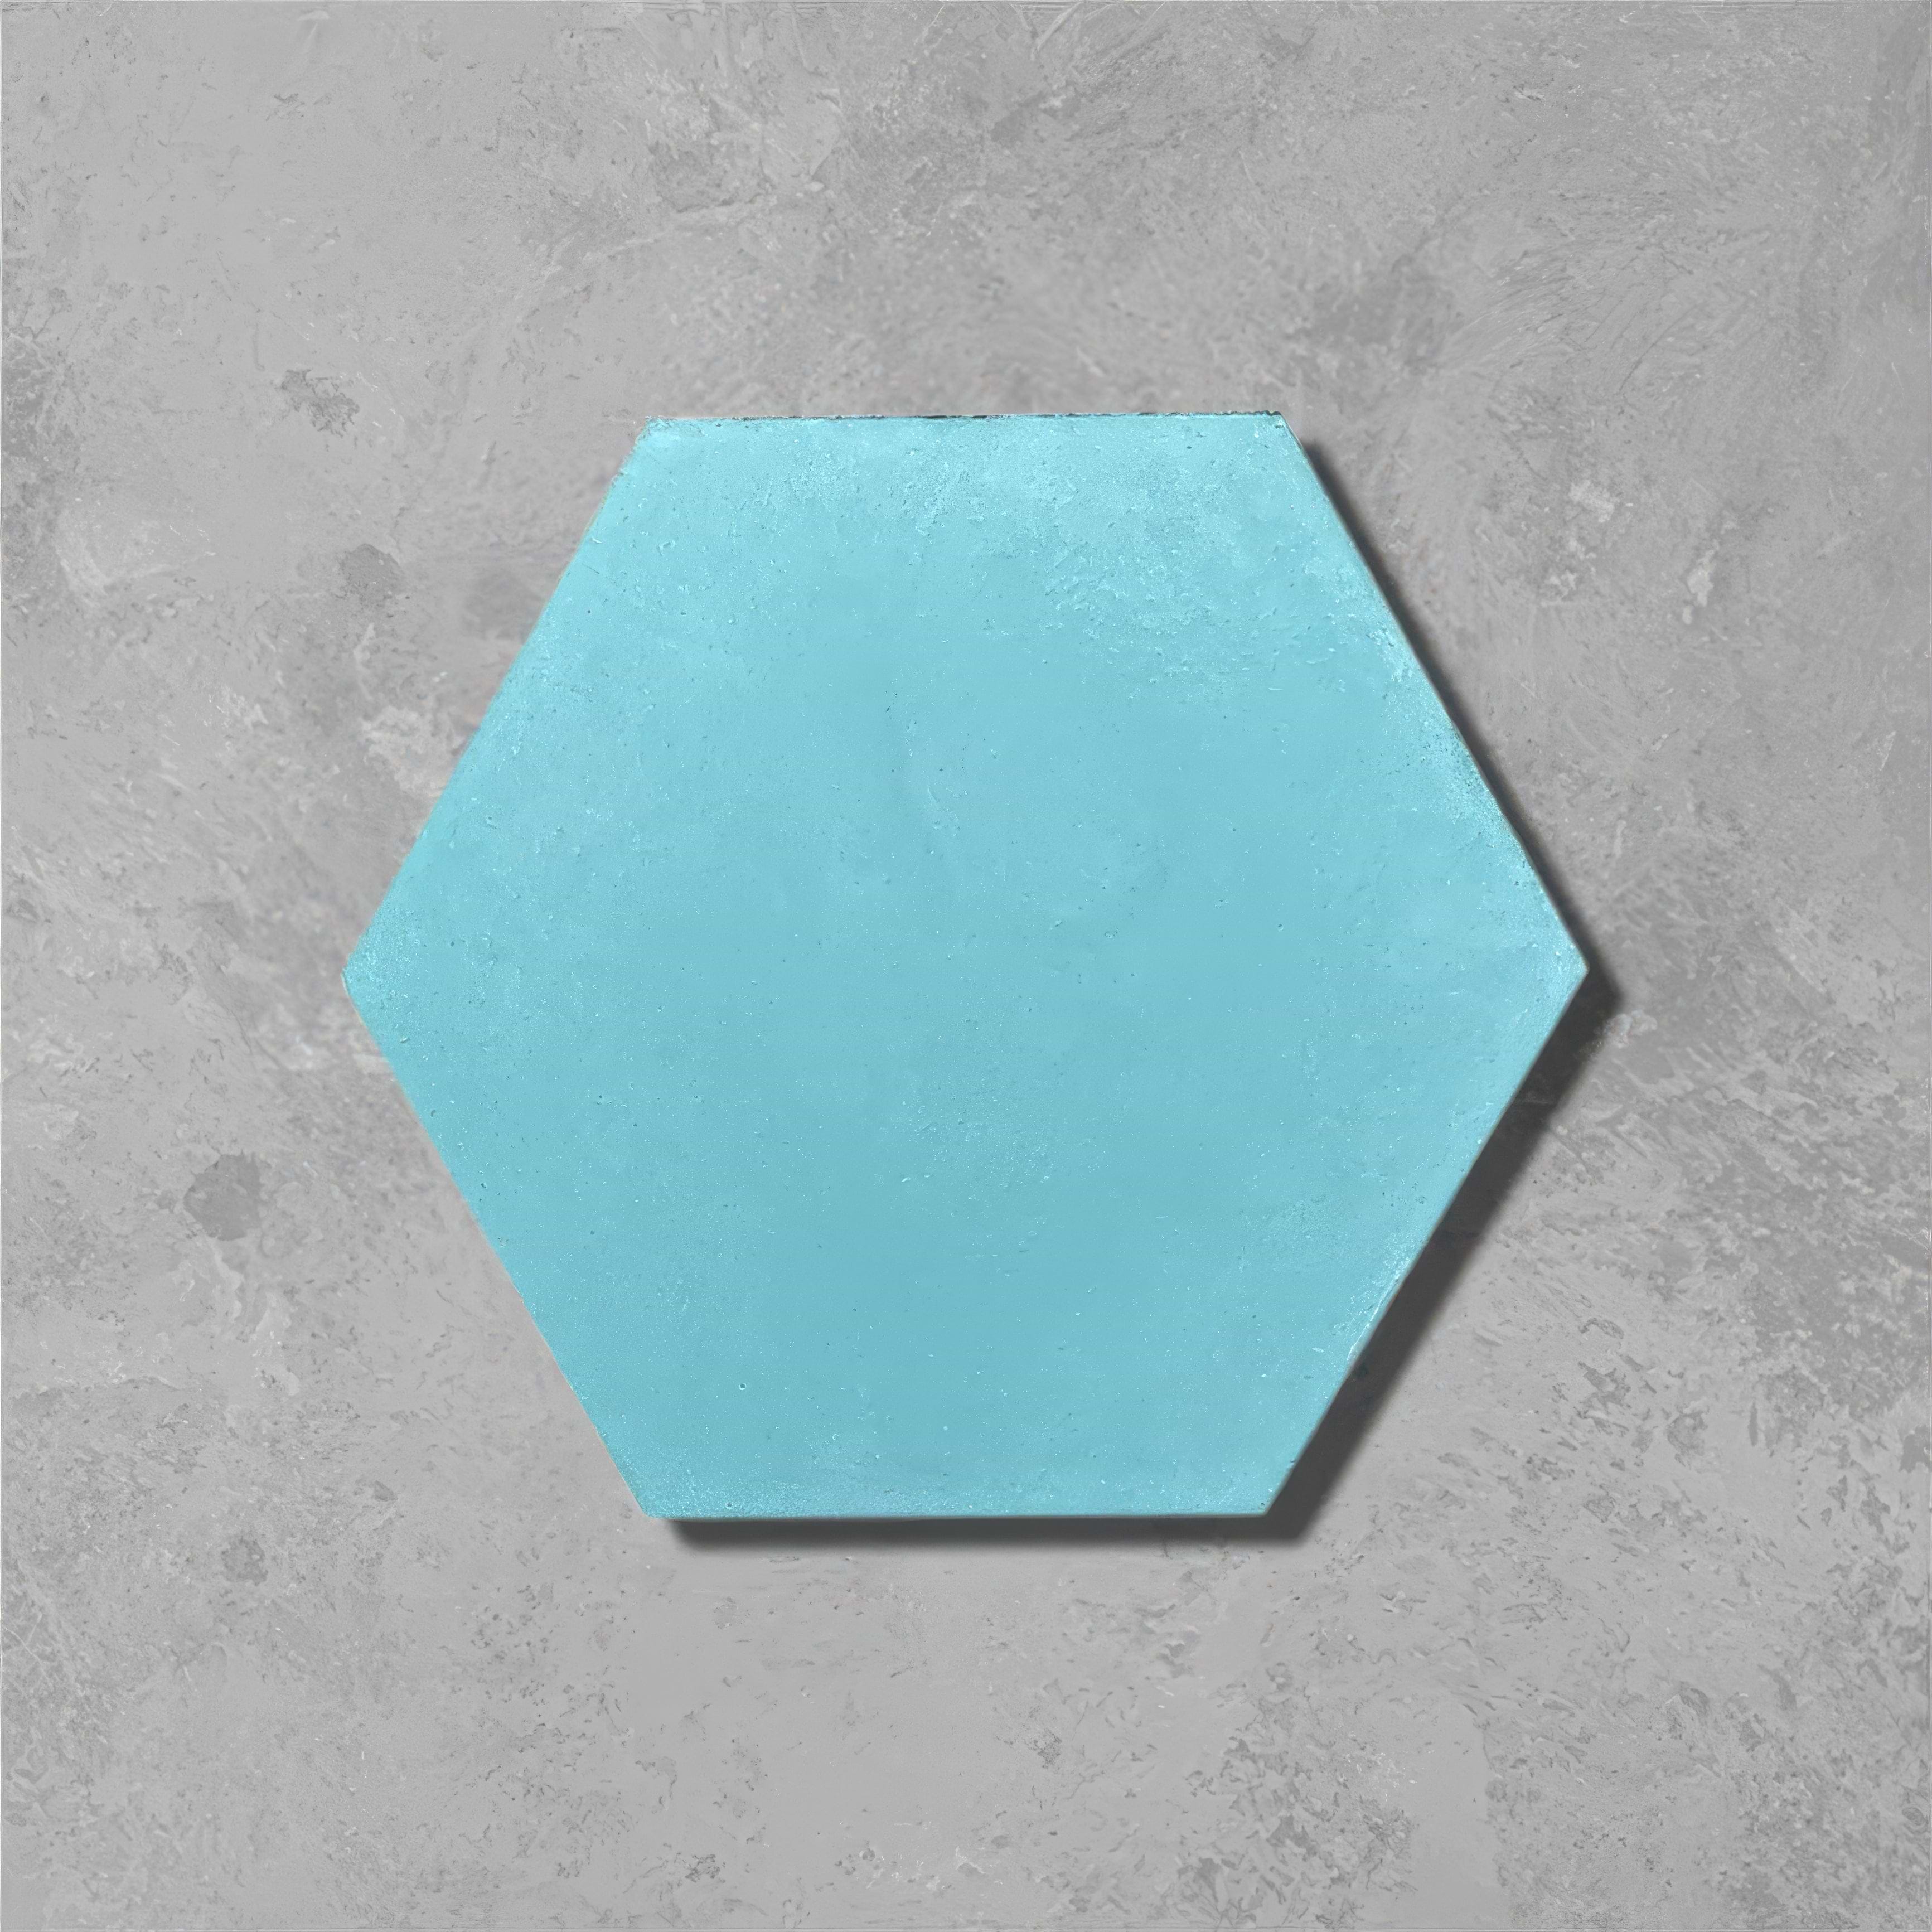 Jade Hexagonal Tile - Hyperion Tiles